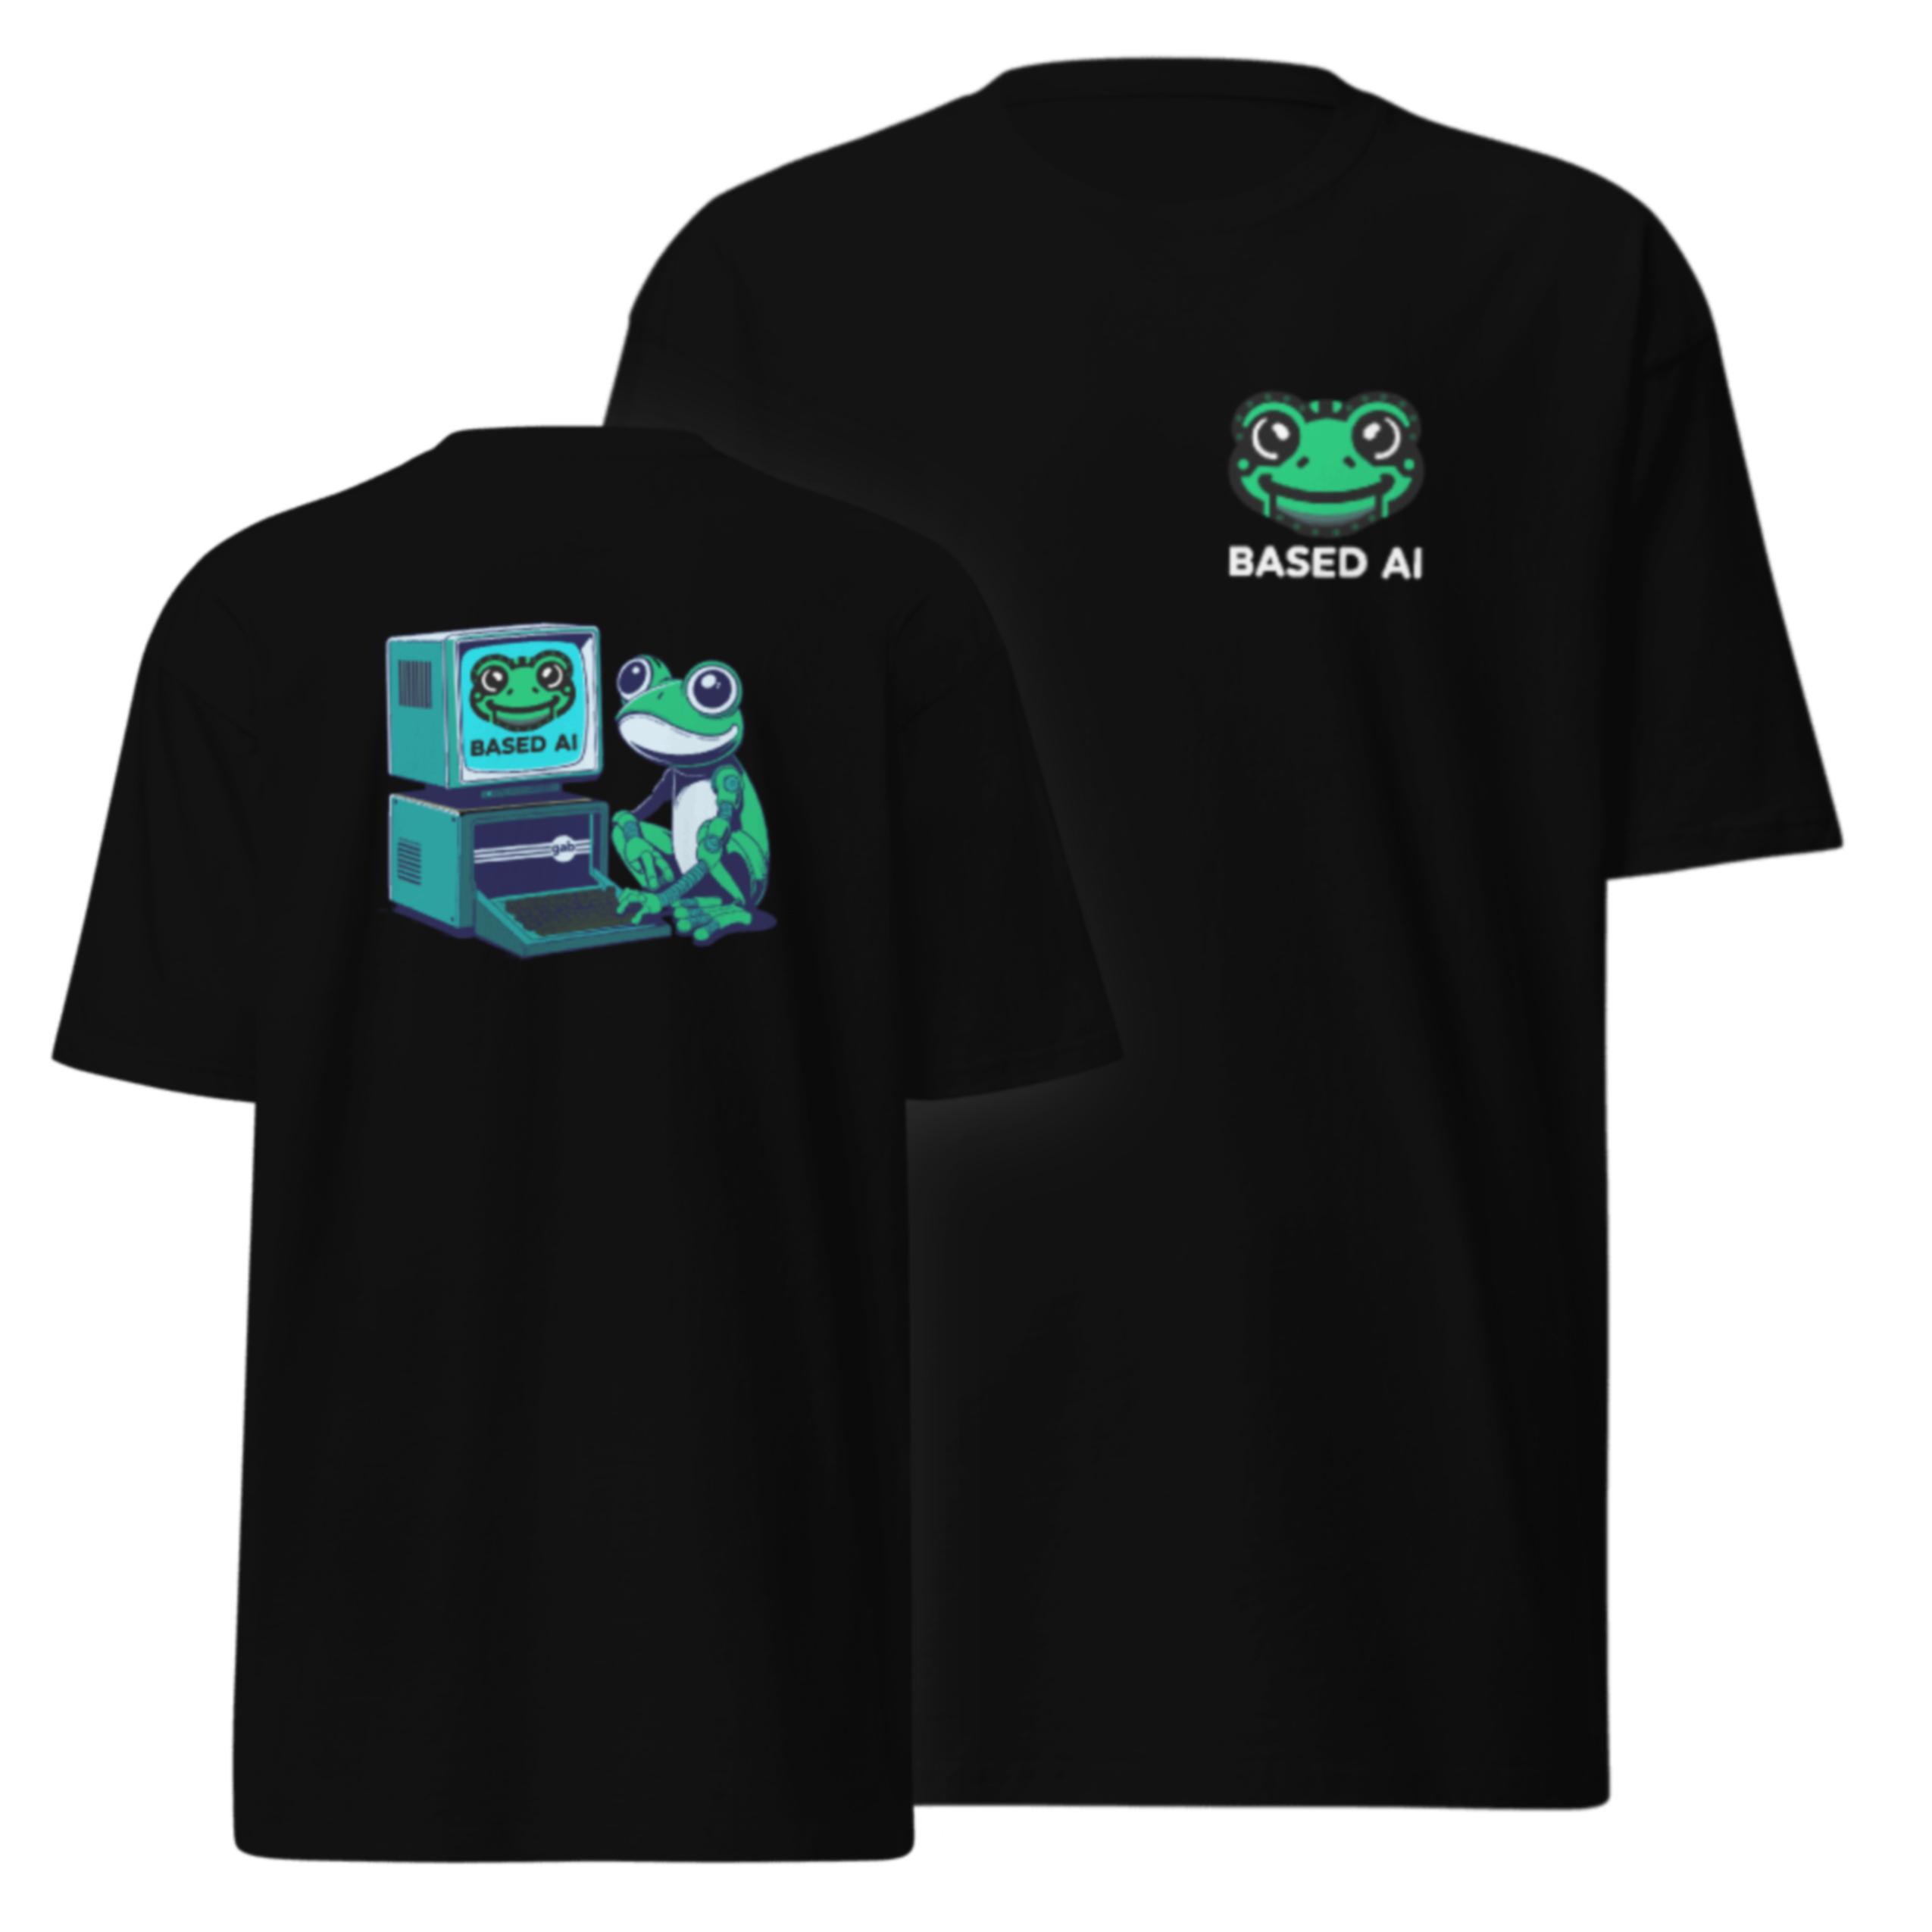 Based AI T-Shirt - Black / L